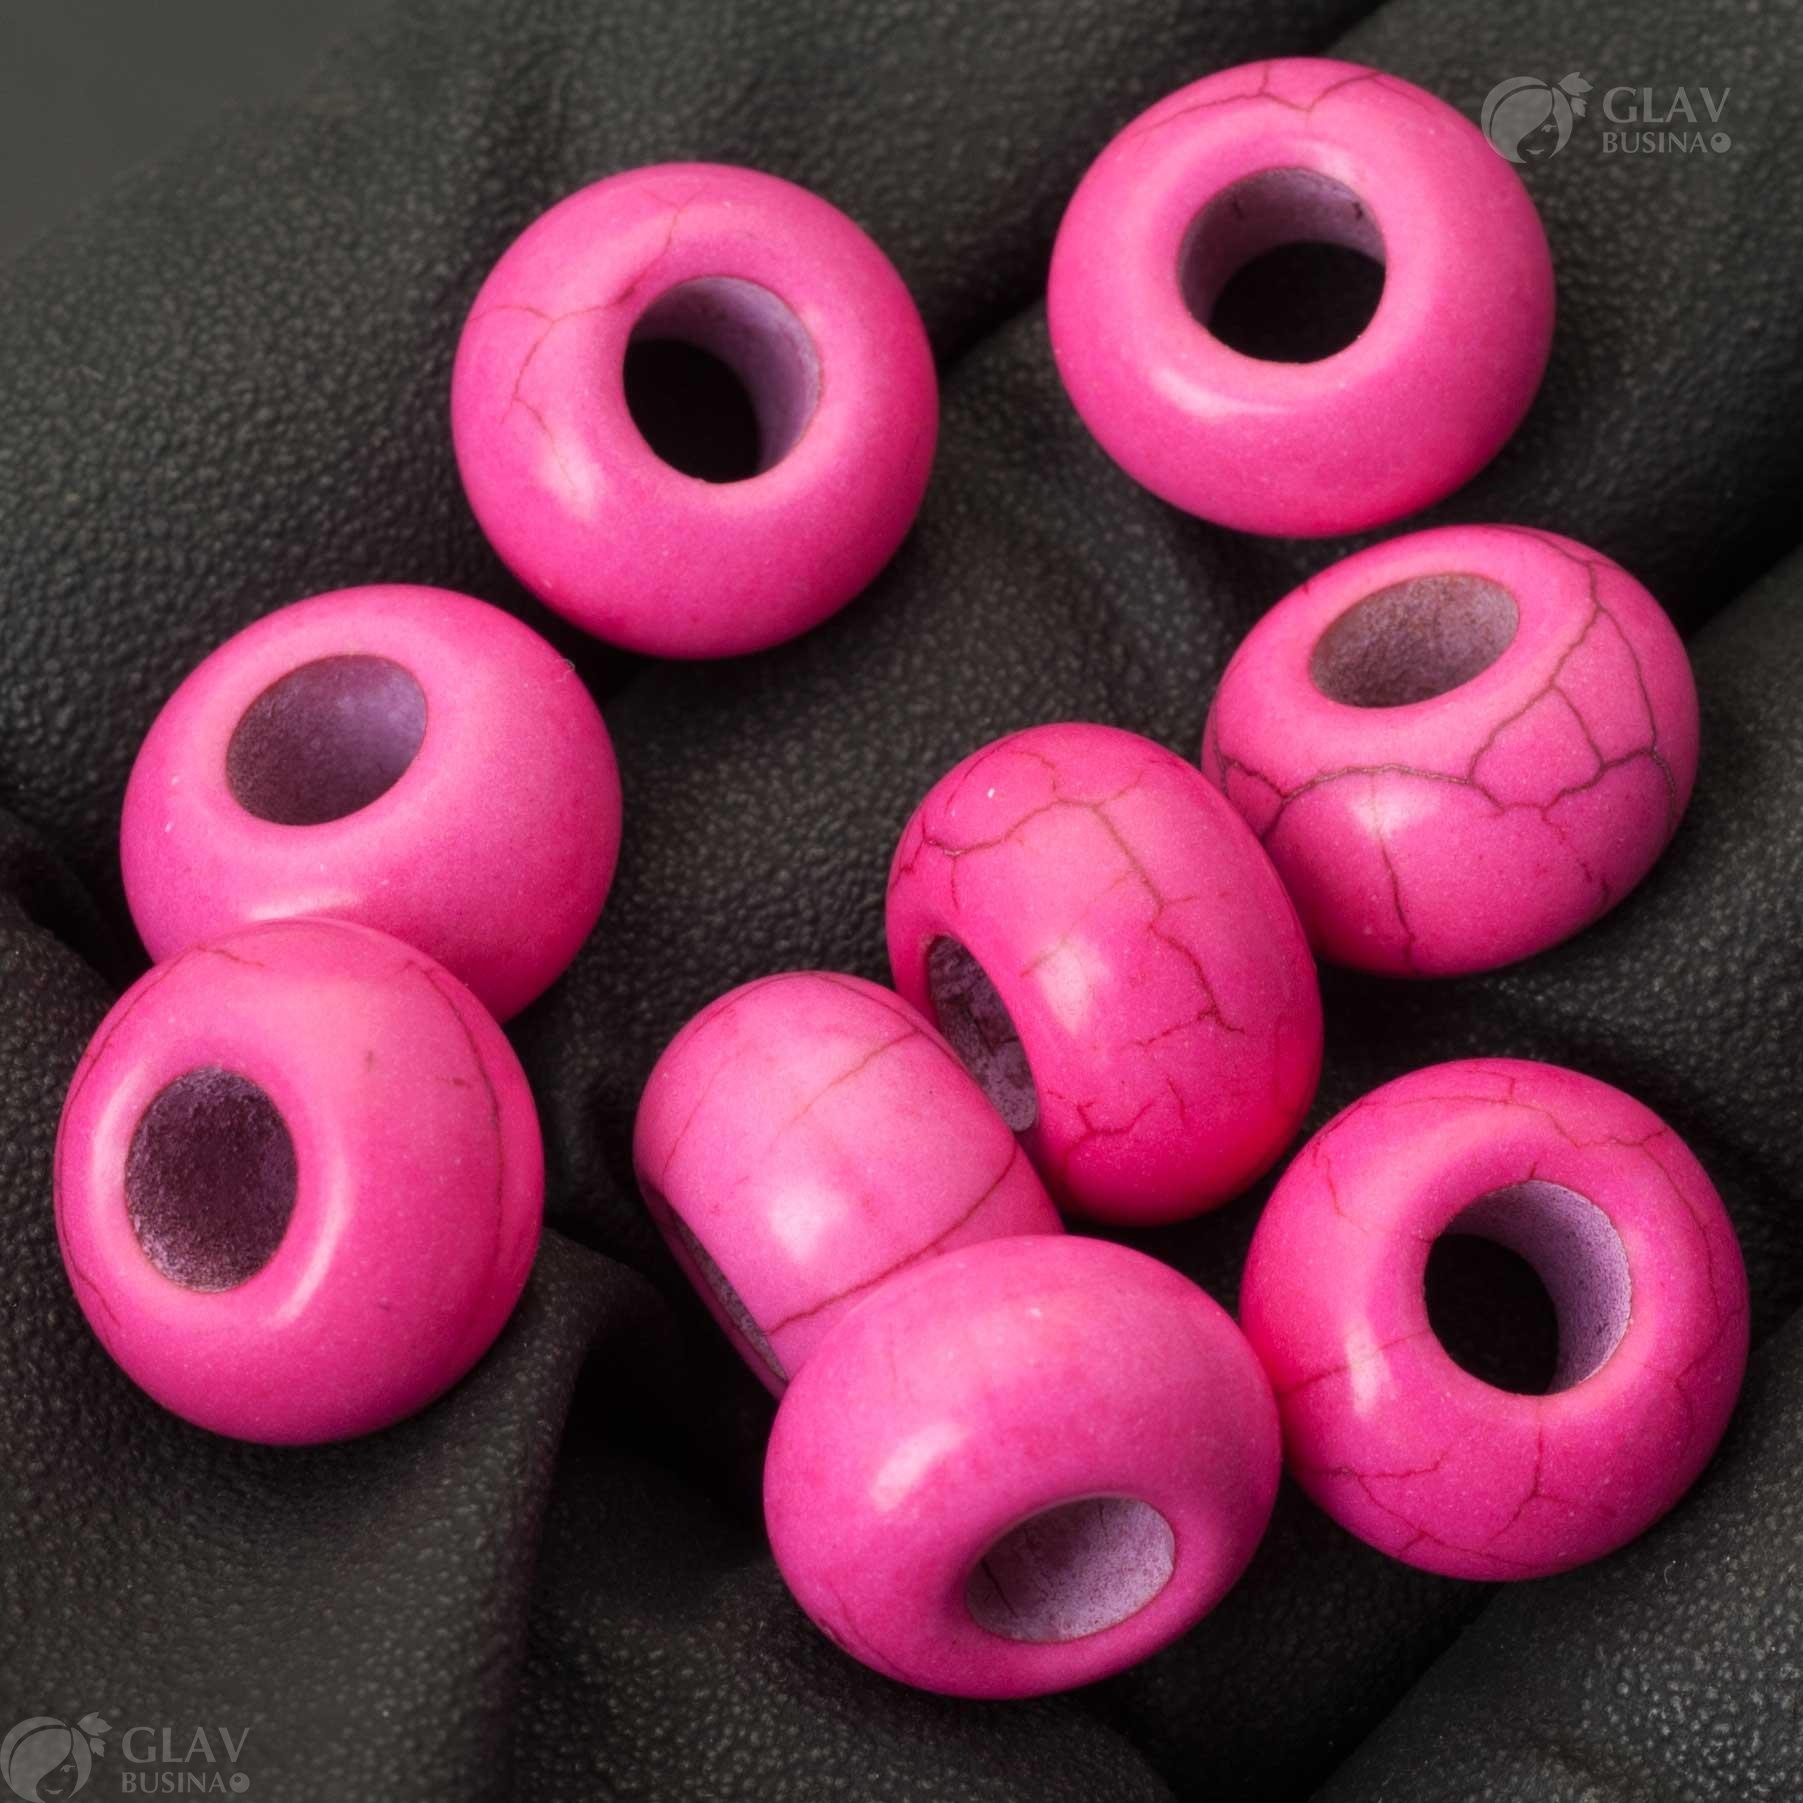 Ярко-розовые бусины-бублики из синтетического говлита, размером 14х8мм с отверстием 5мм, идеальны для создания украшений.